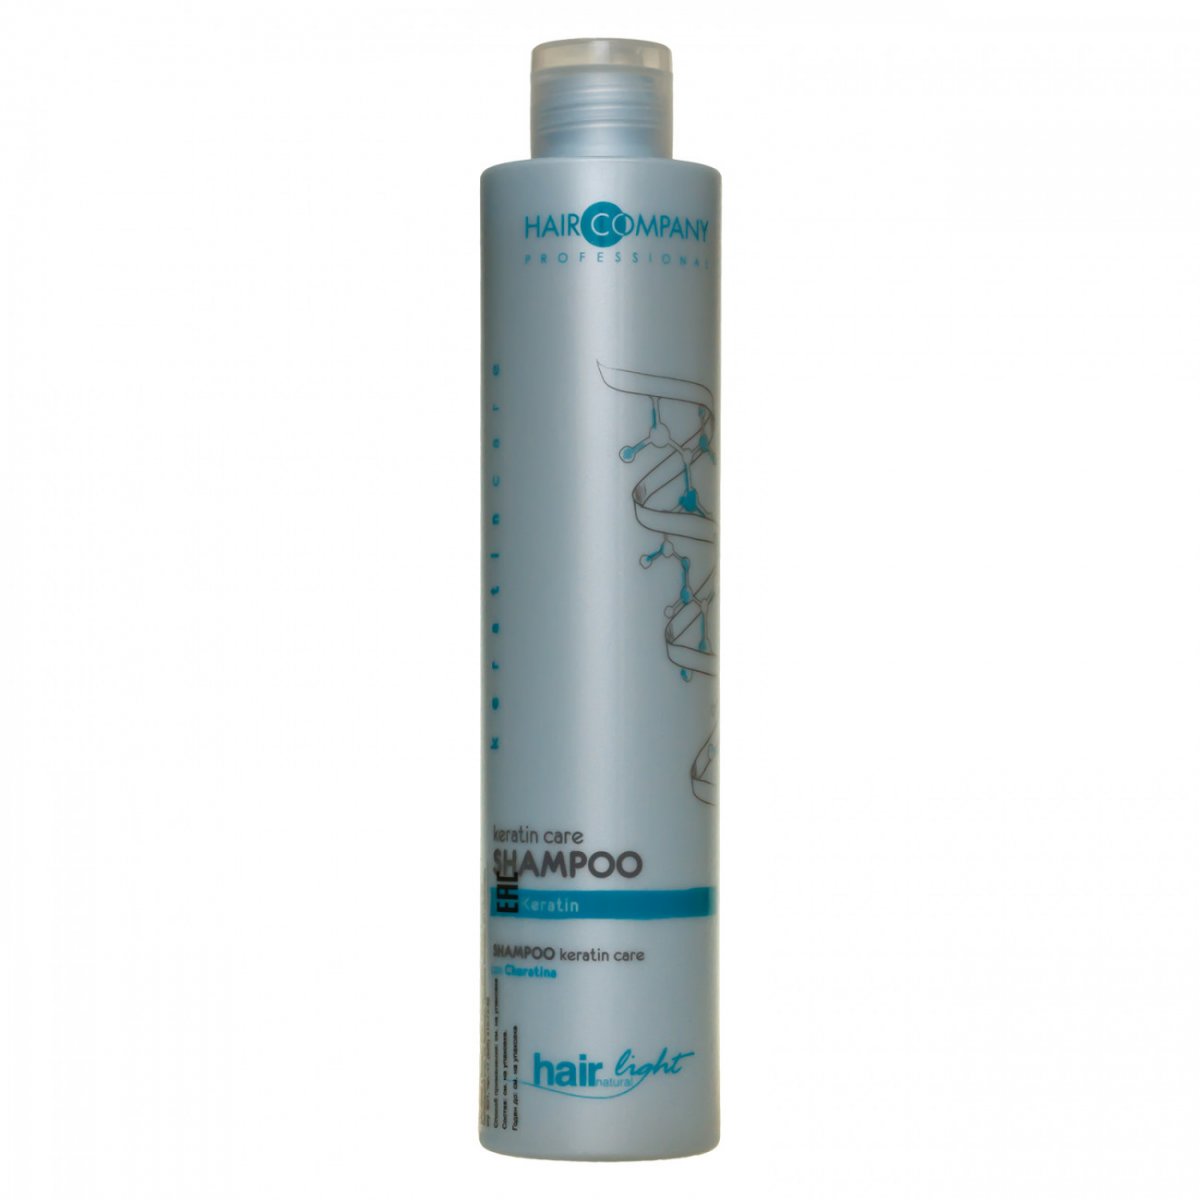 Купить Hair Company Professional Light Keratin Care Shampoo - Шампунь-уход для волос с кератином 250 мл, Hair Company Professional (Италия)